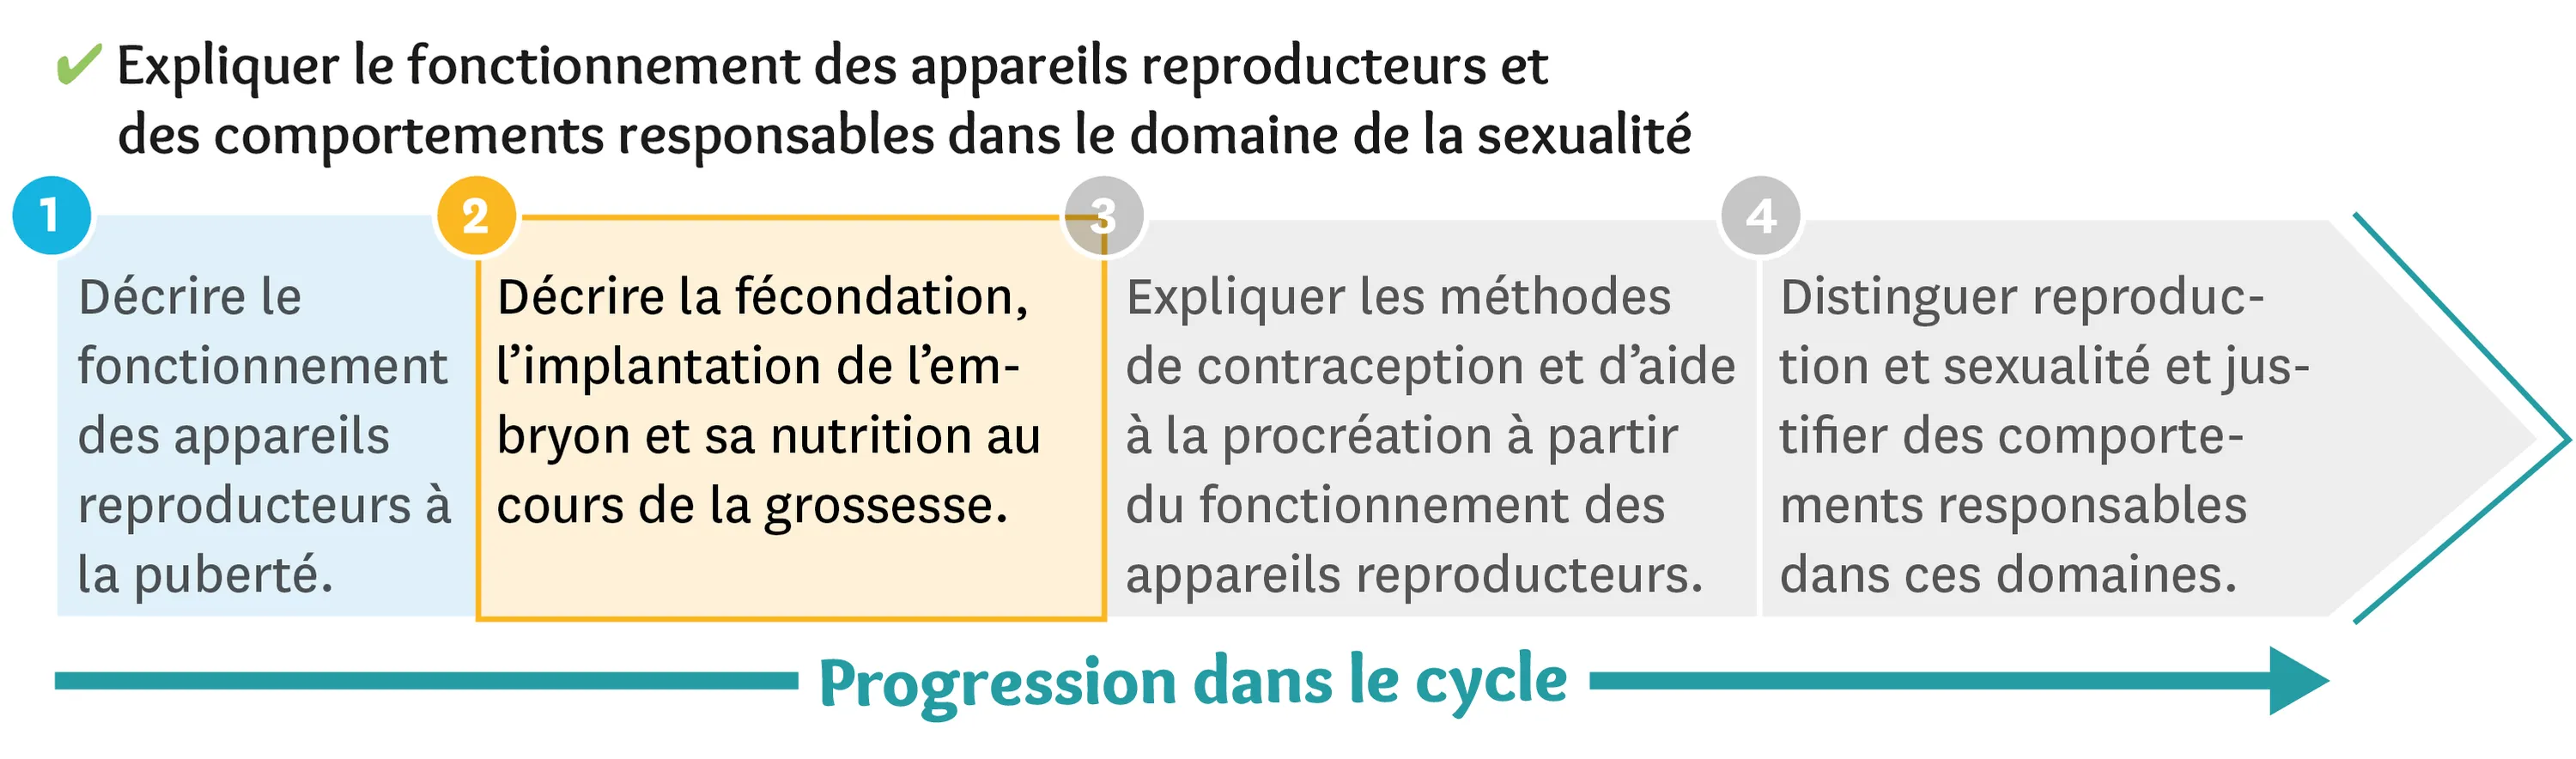 Illustration d'une progression dans le cycle des appareils reproducteurs et des comportements responsables dans le domaines de la sexualité